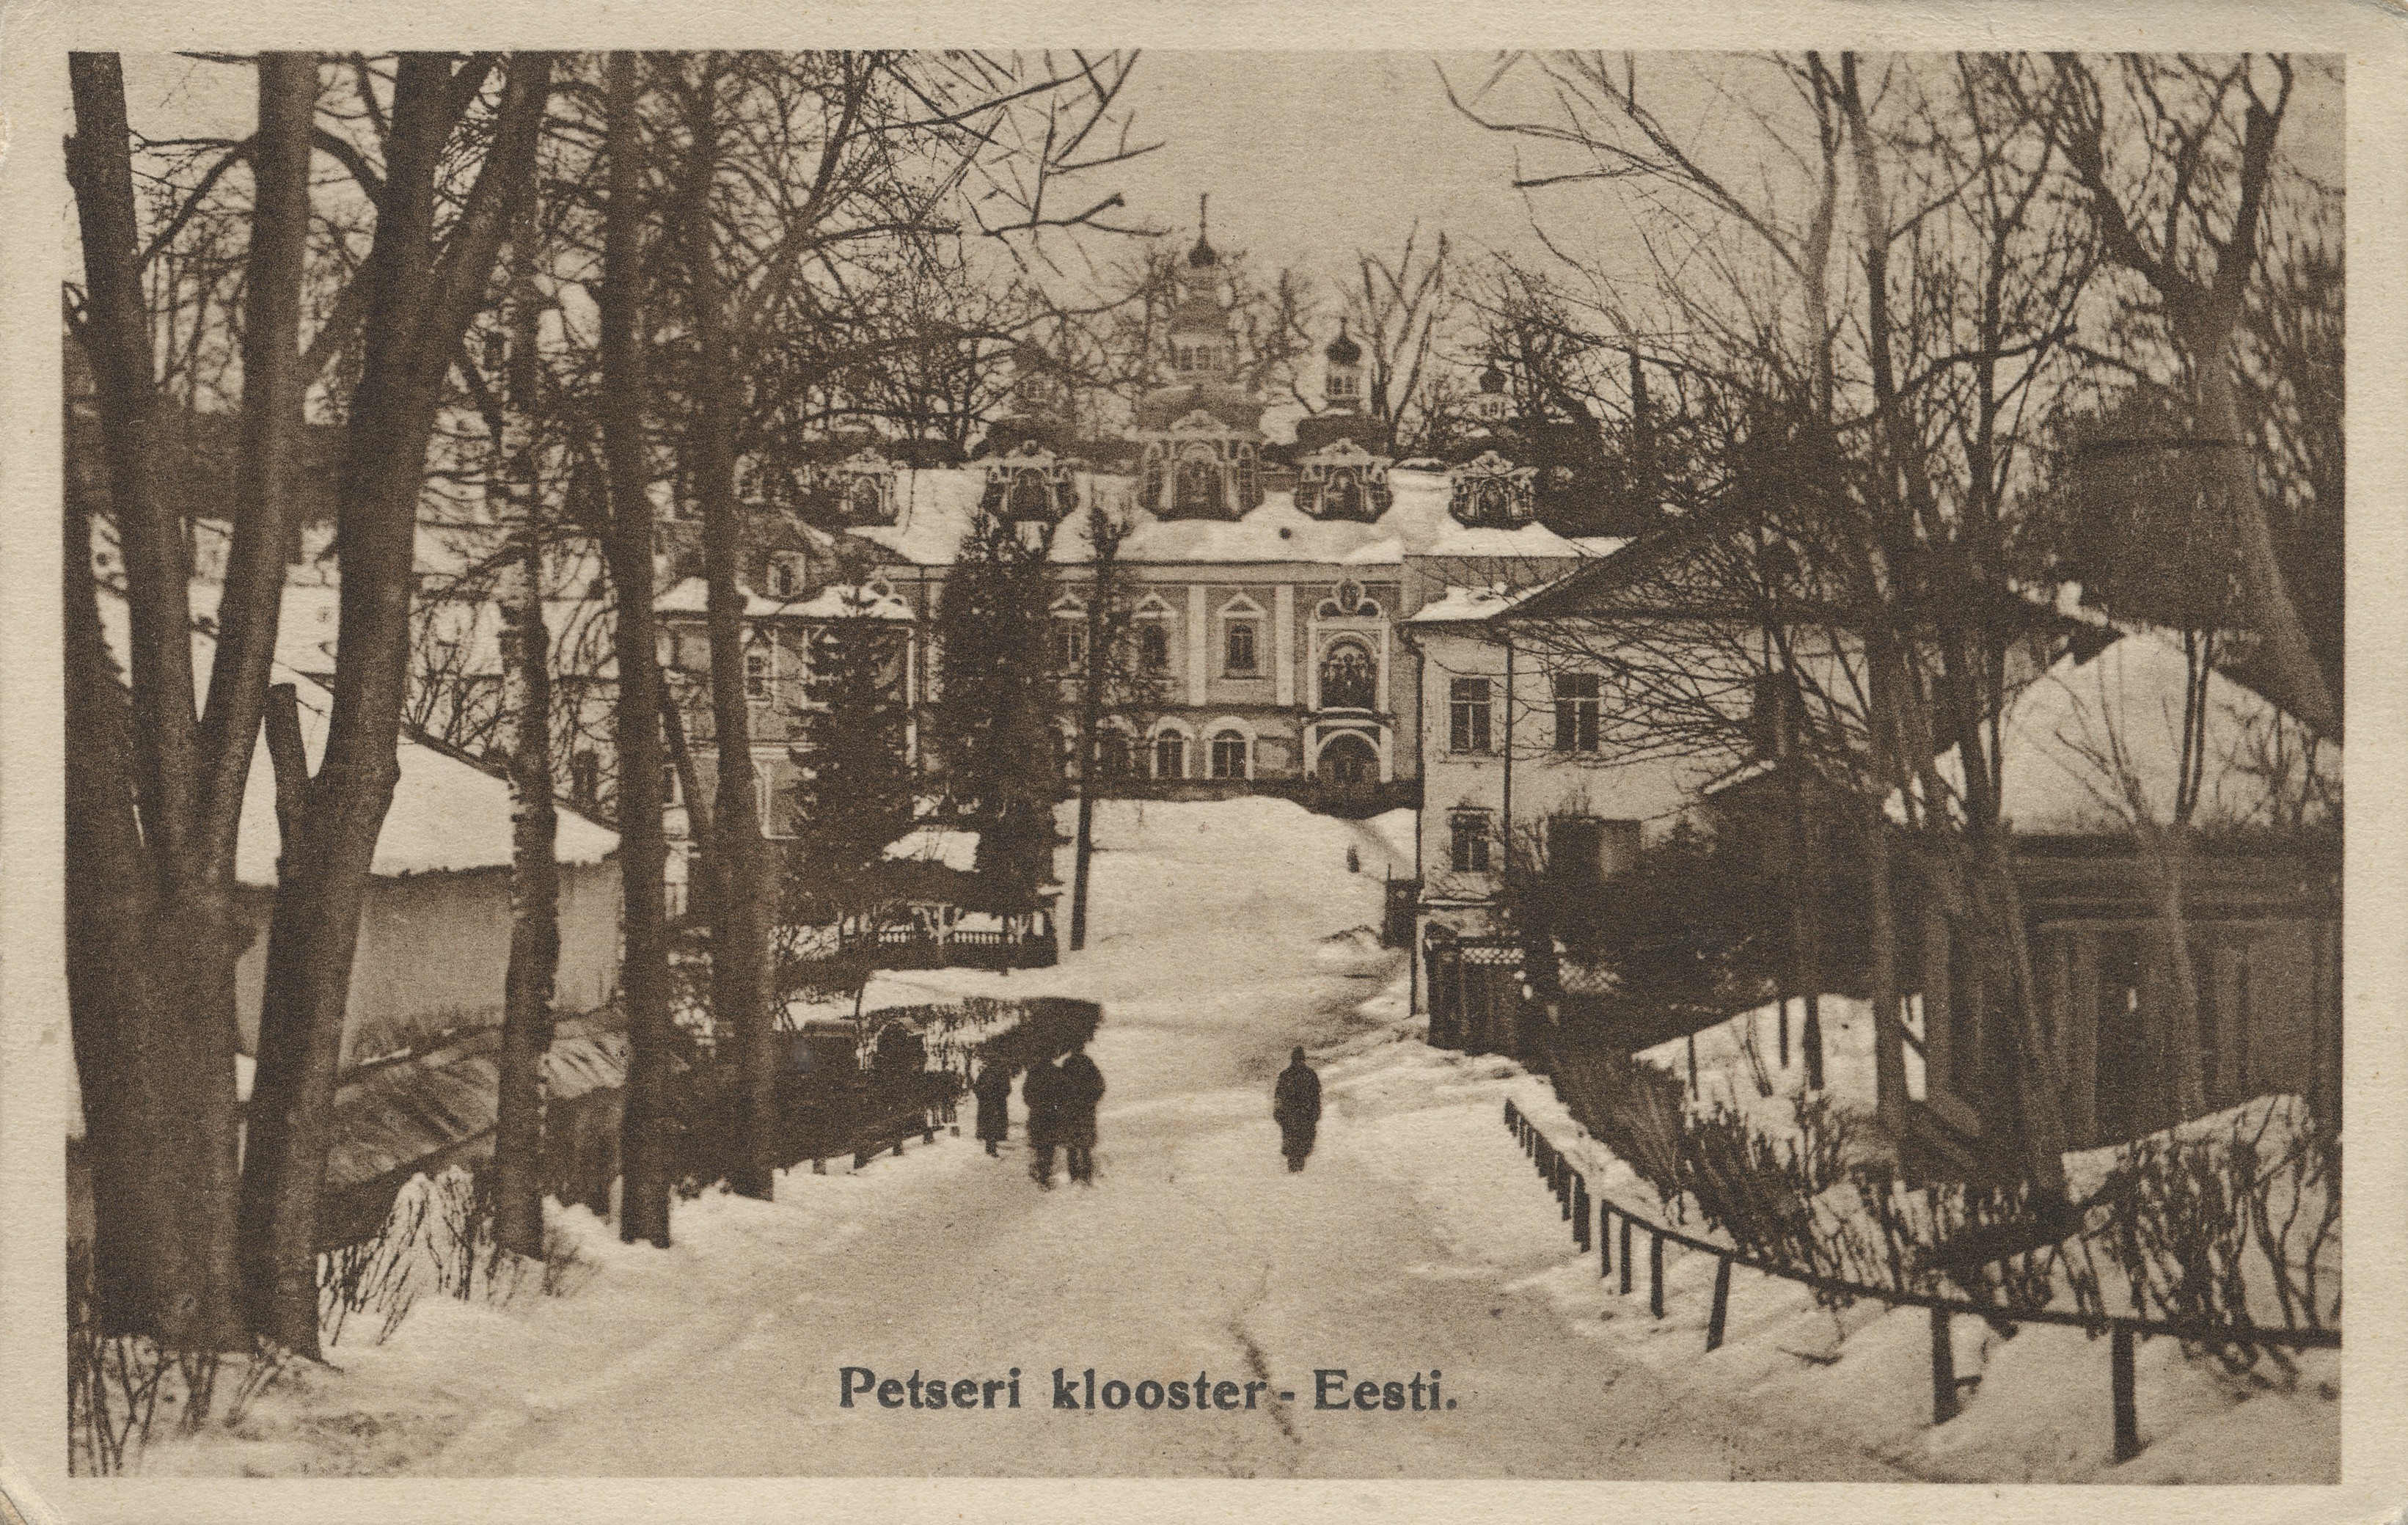 Petseri monastery : Estonia